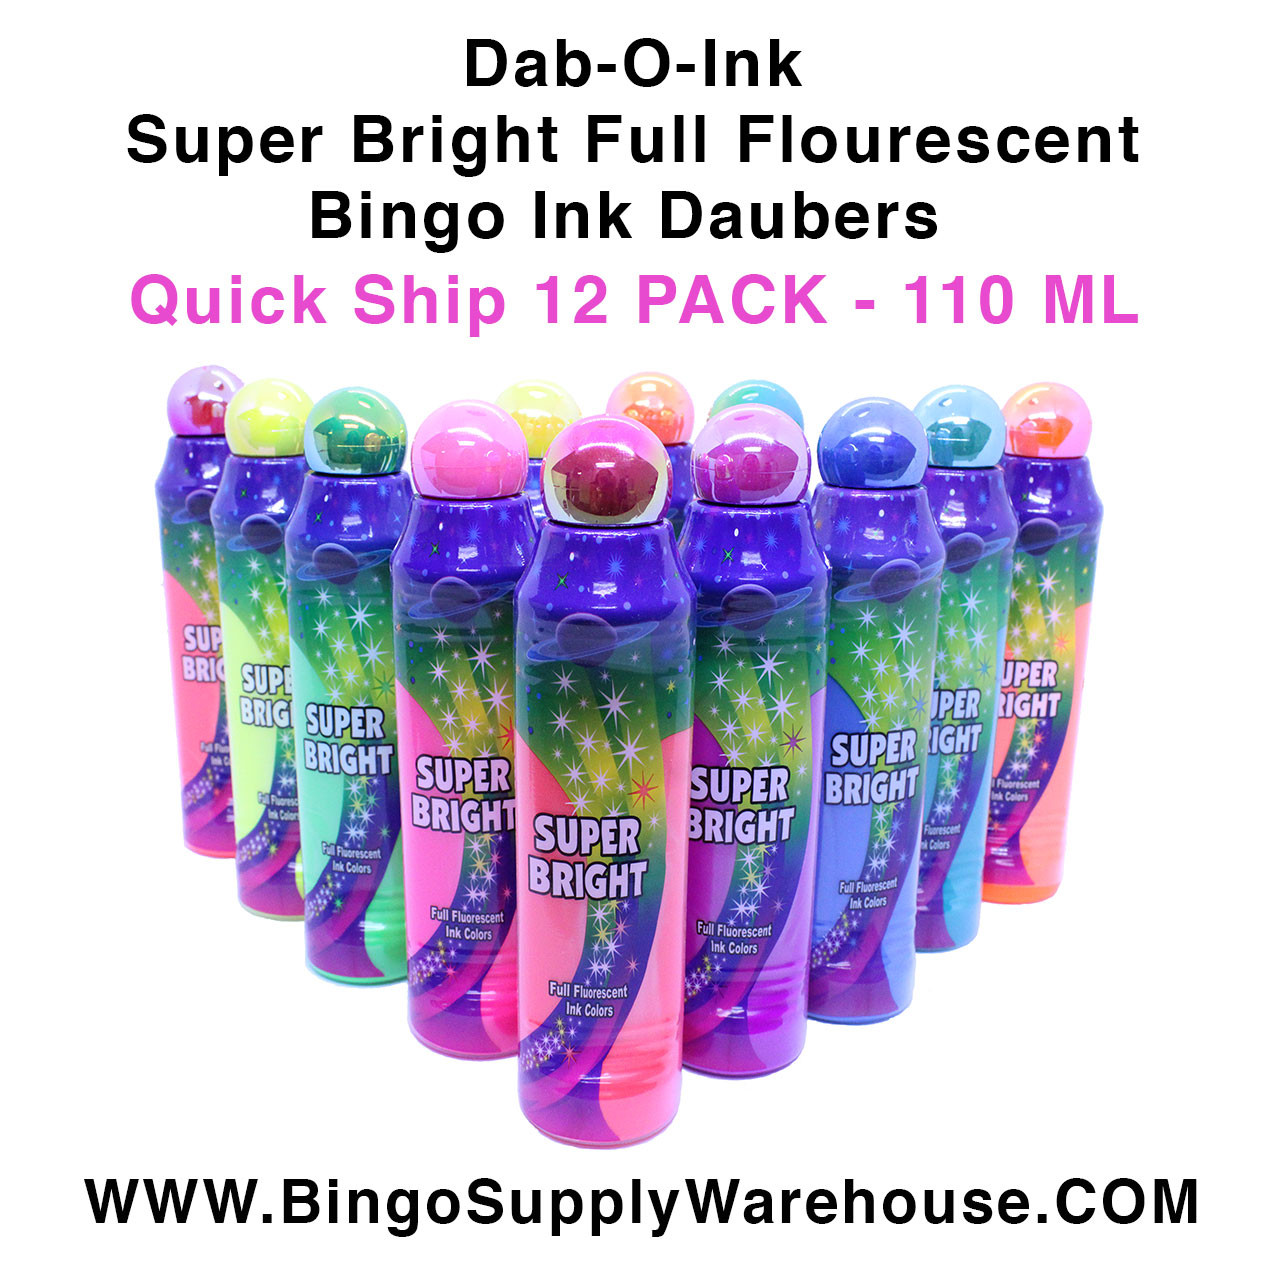 Dabbin' Glow 3 oz Fluorescent Bingo Dauber